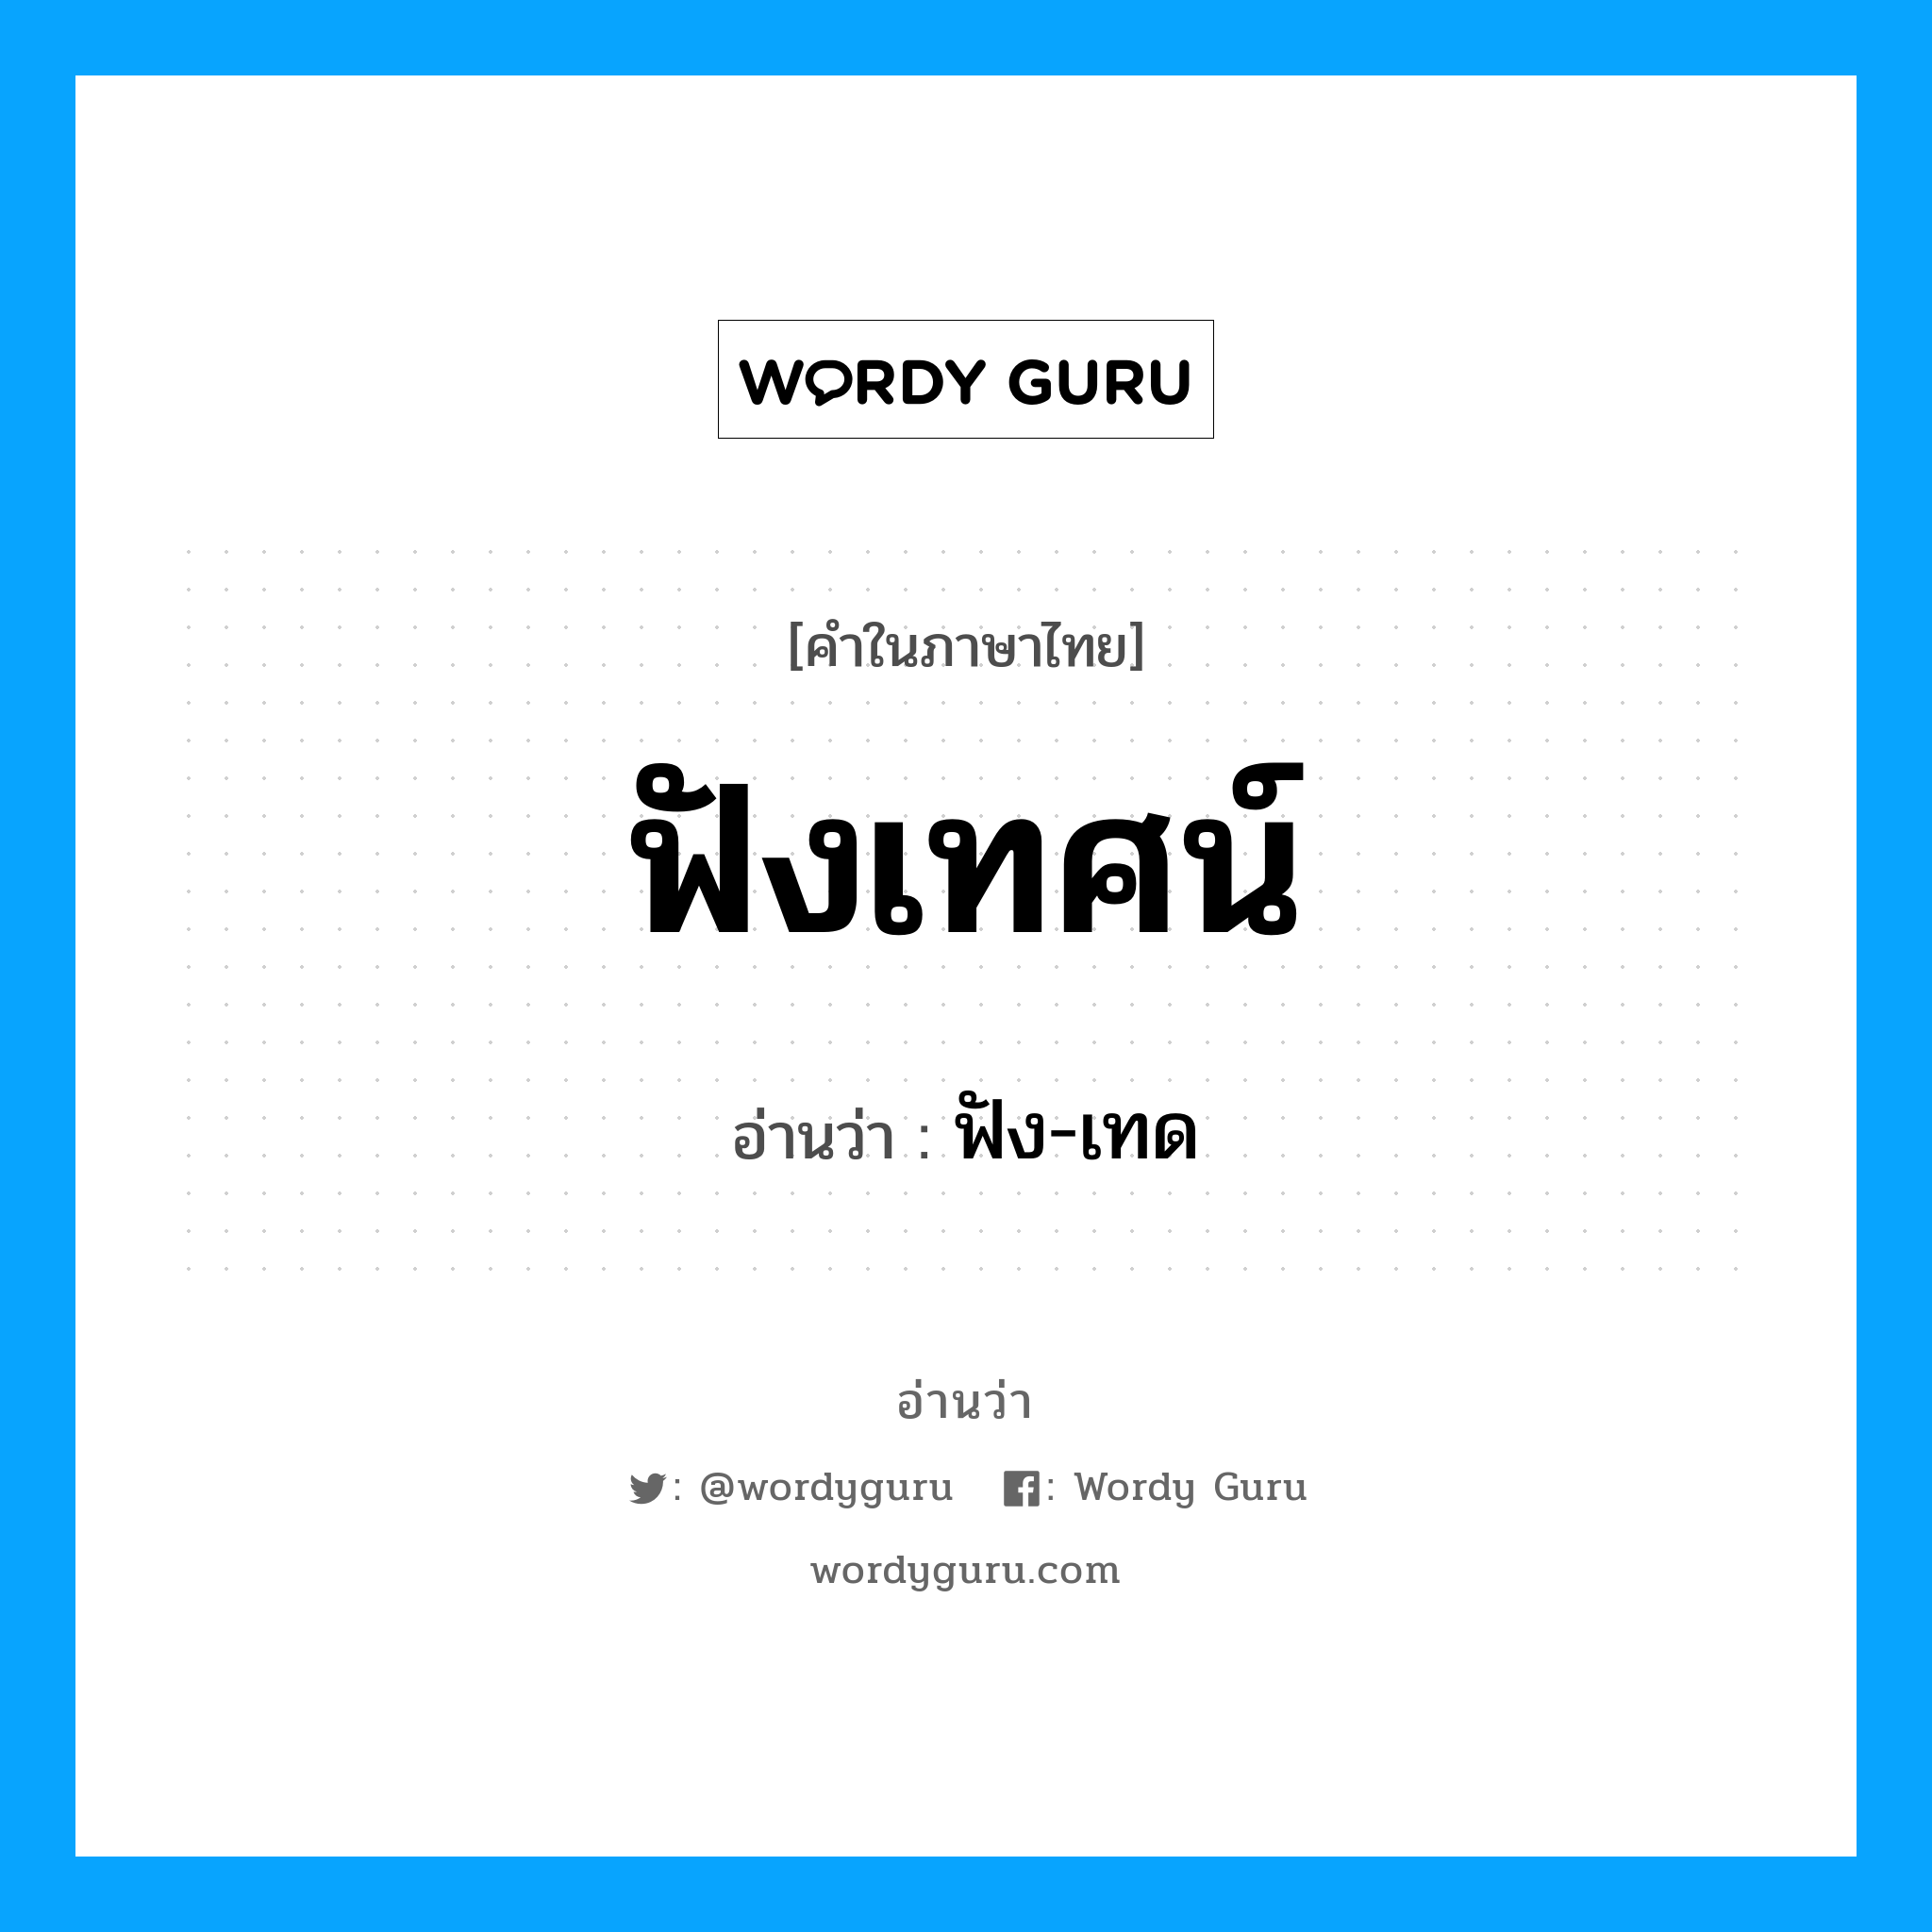 ฟัง-เทด เป็นคำอ่านของคำไหน?, คำในภาษาไทย ฟัง-เทด อ่านว่า ฟังเทศน์